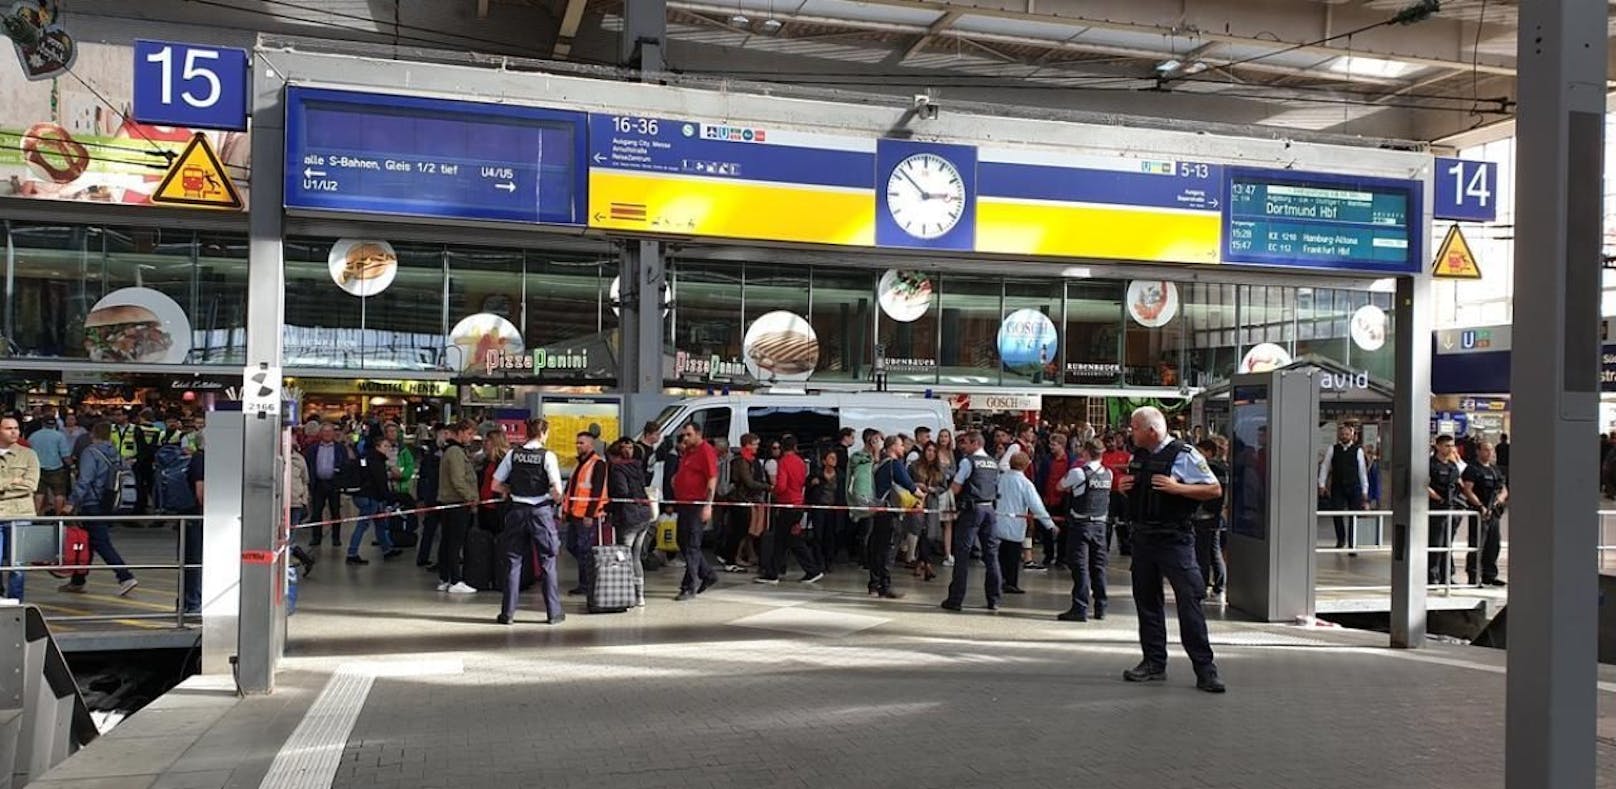 Großalarm am Hauptbahnhof in München: In einem Zug soll ein Bewaffneter sein.